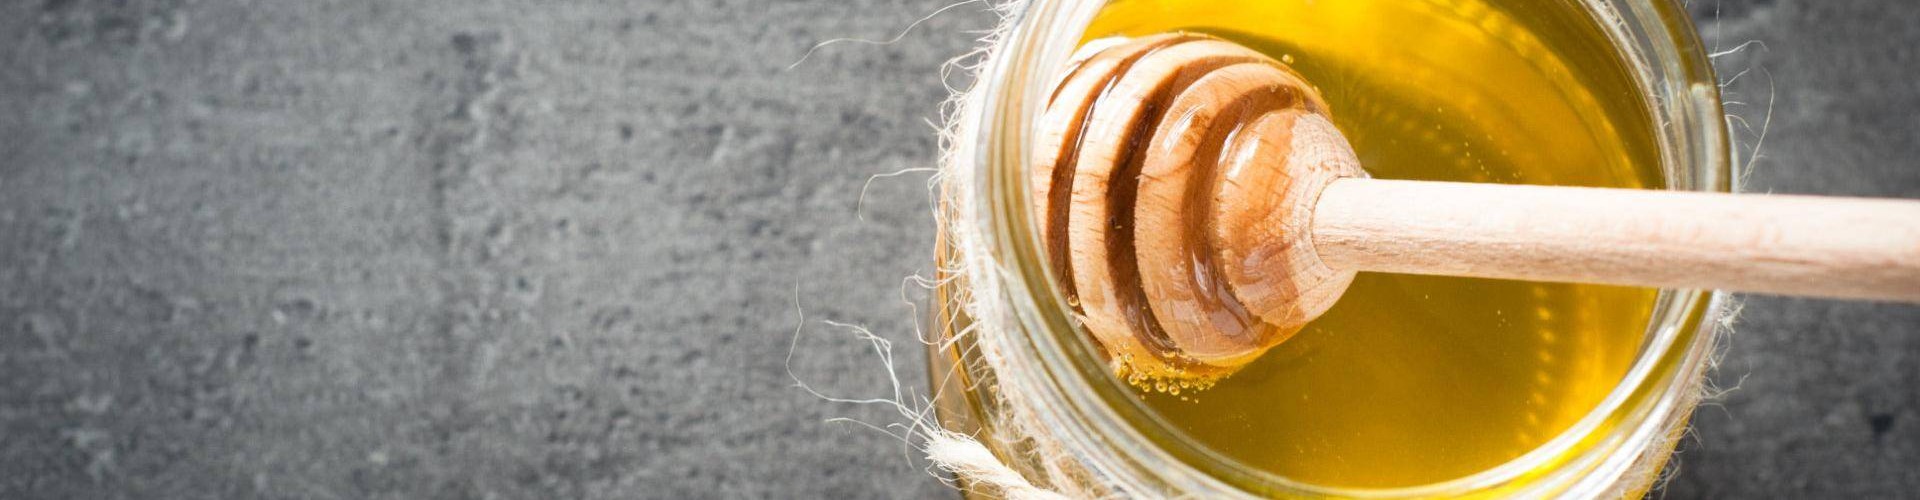 La Cupeta è un dolce tipo della Valtellina a base di miele prodotto naturalmente in questa terra